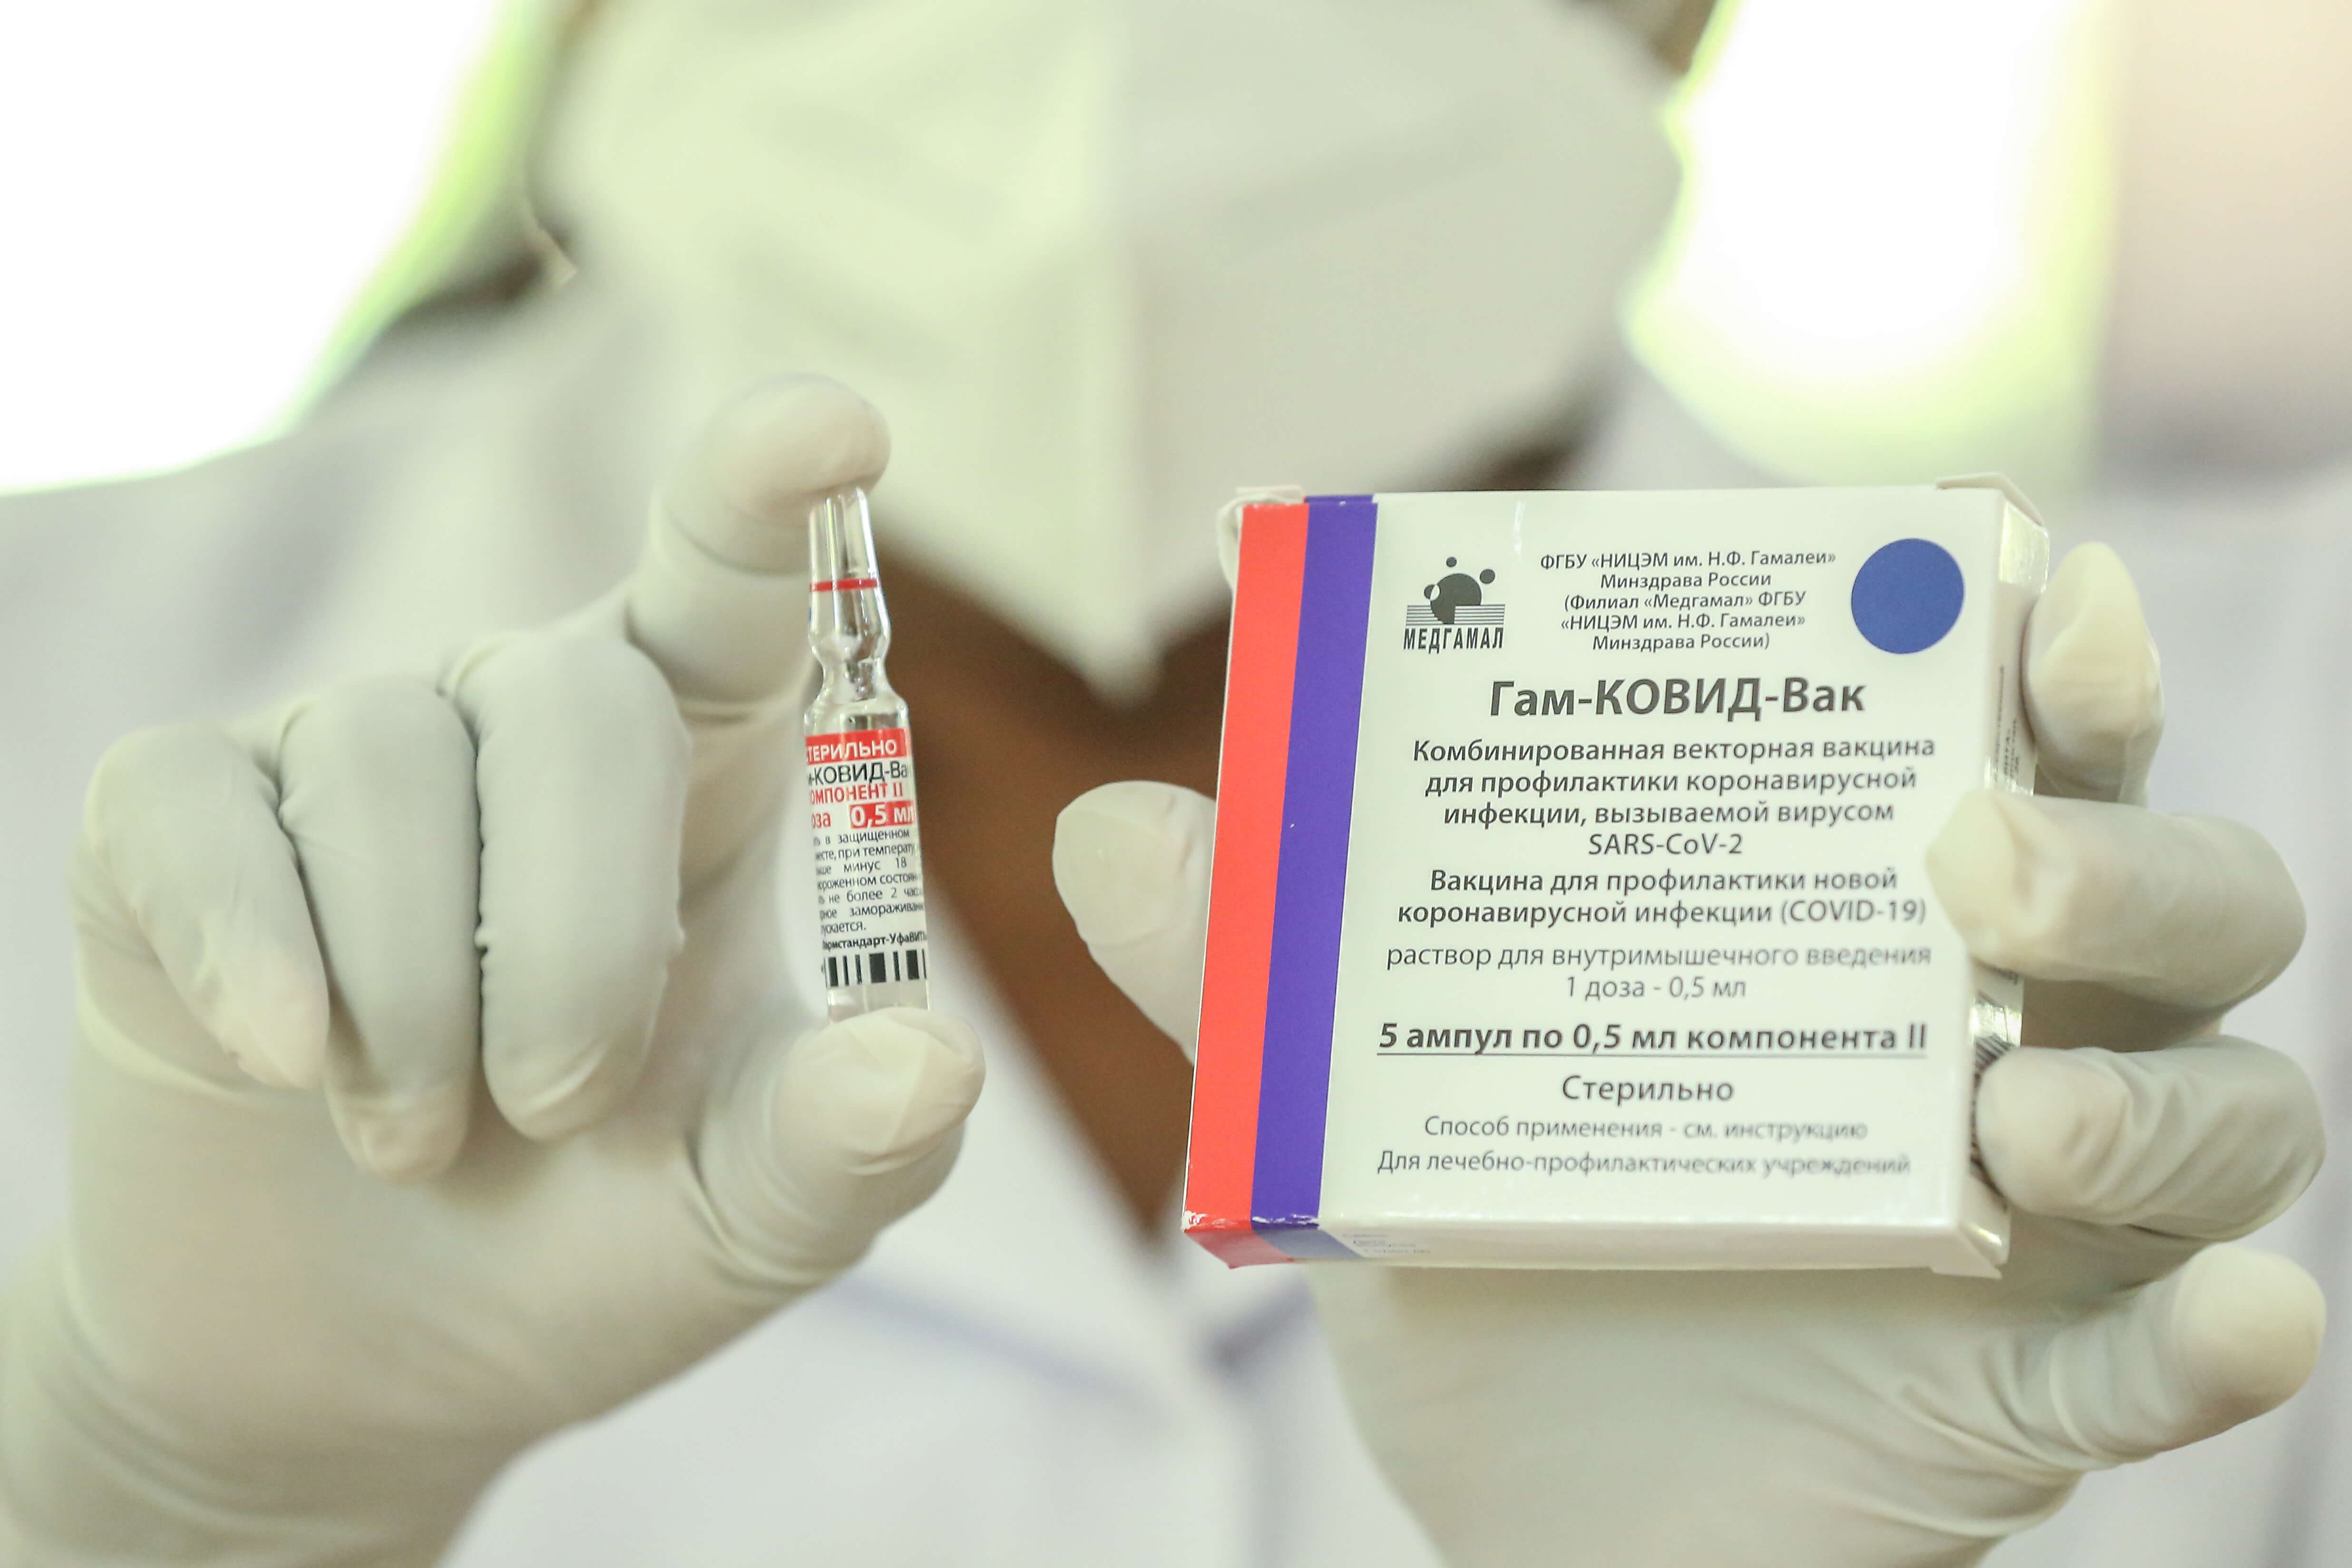 Rusya’da Korona aşısı olana 2 gün izin